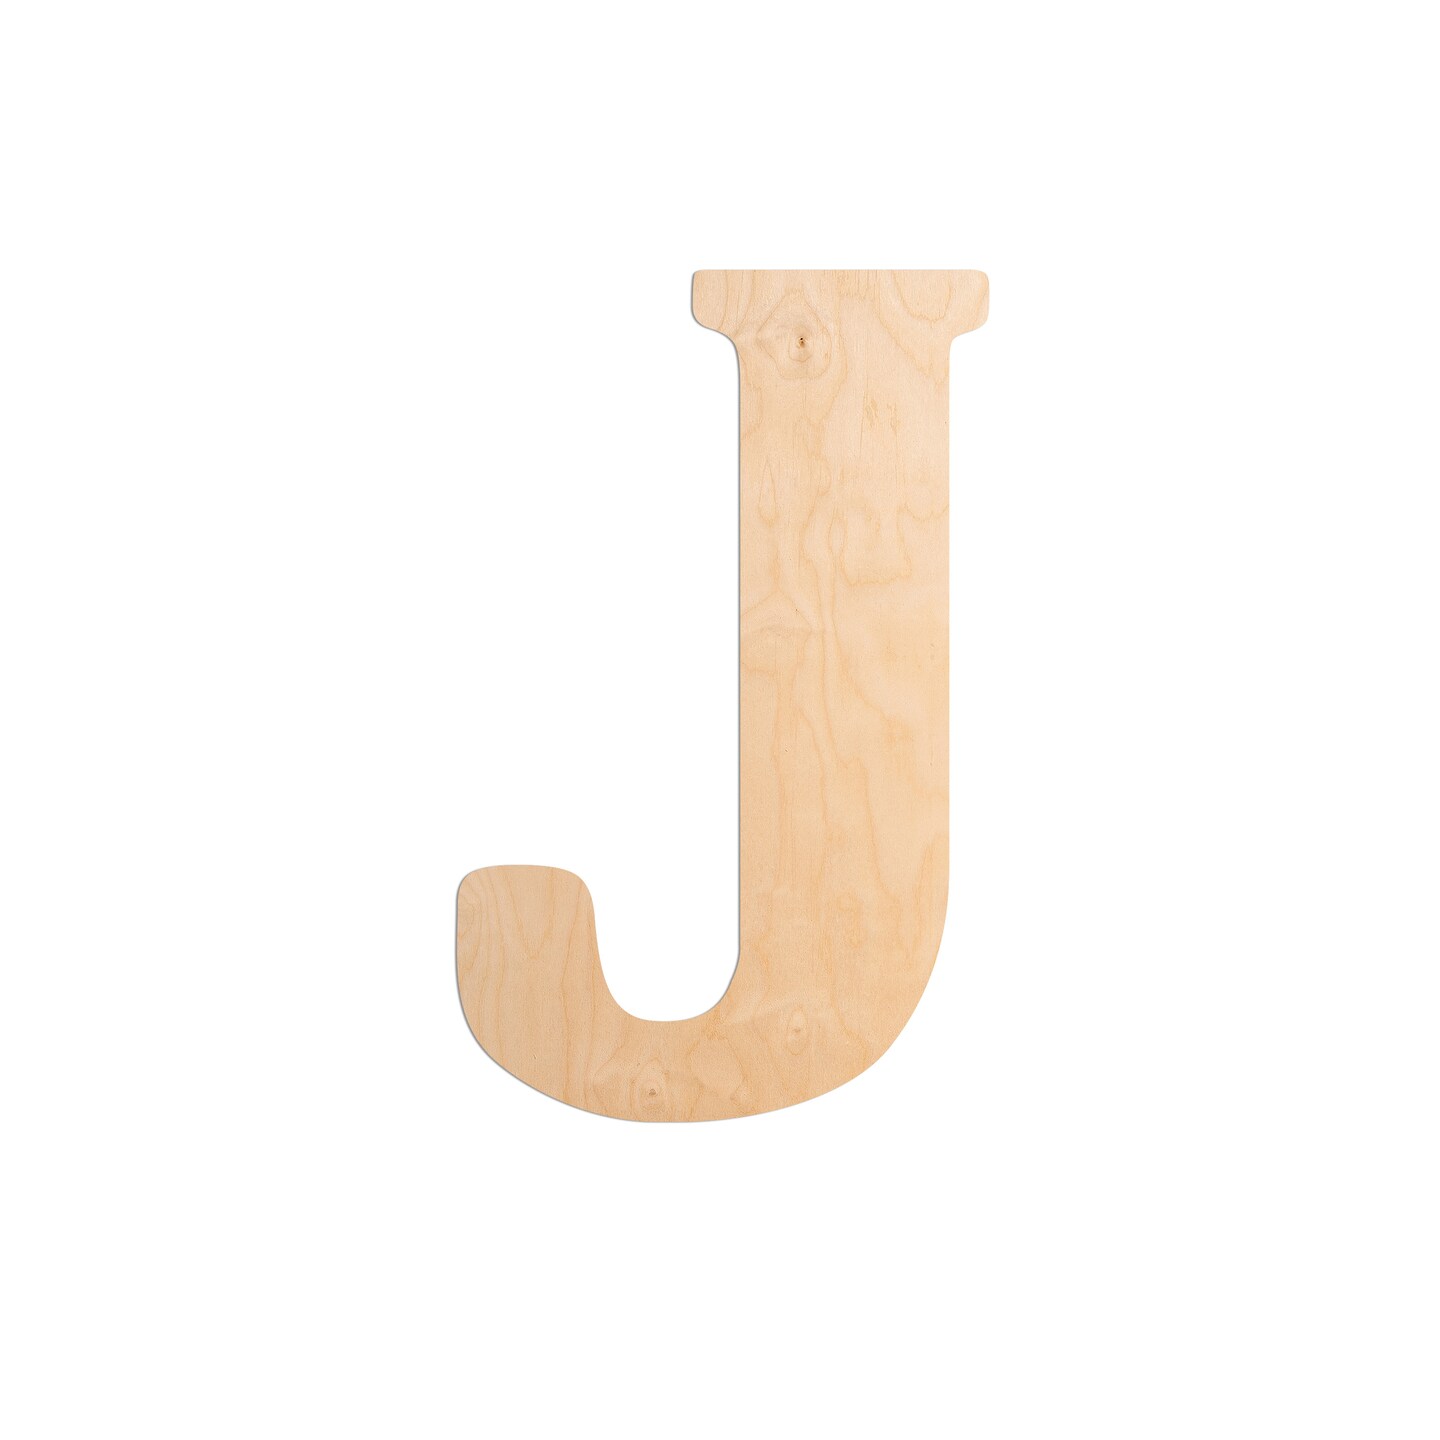 23 In. Letter J, Unfinished Vintage Wood Letter (J)